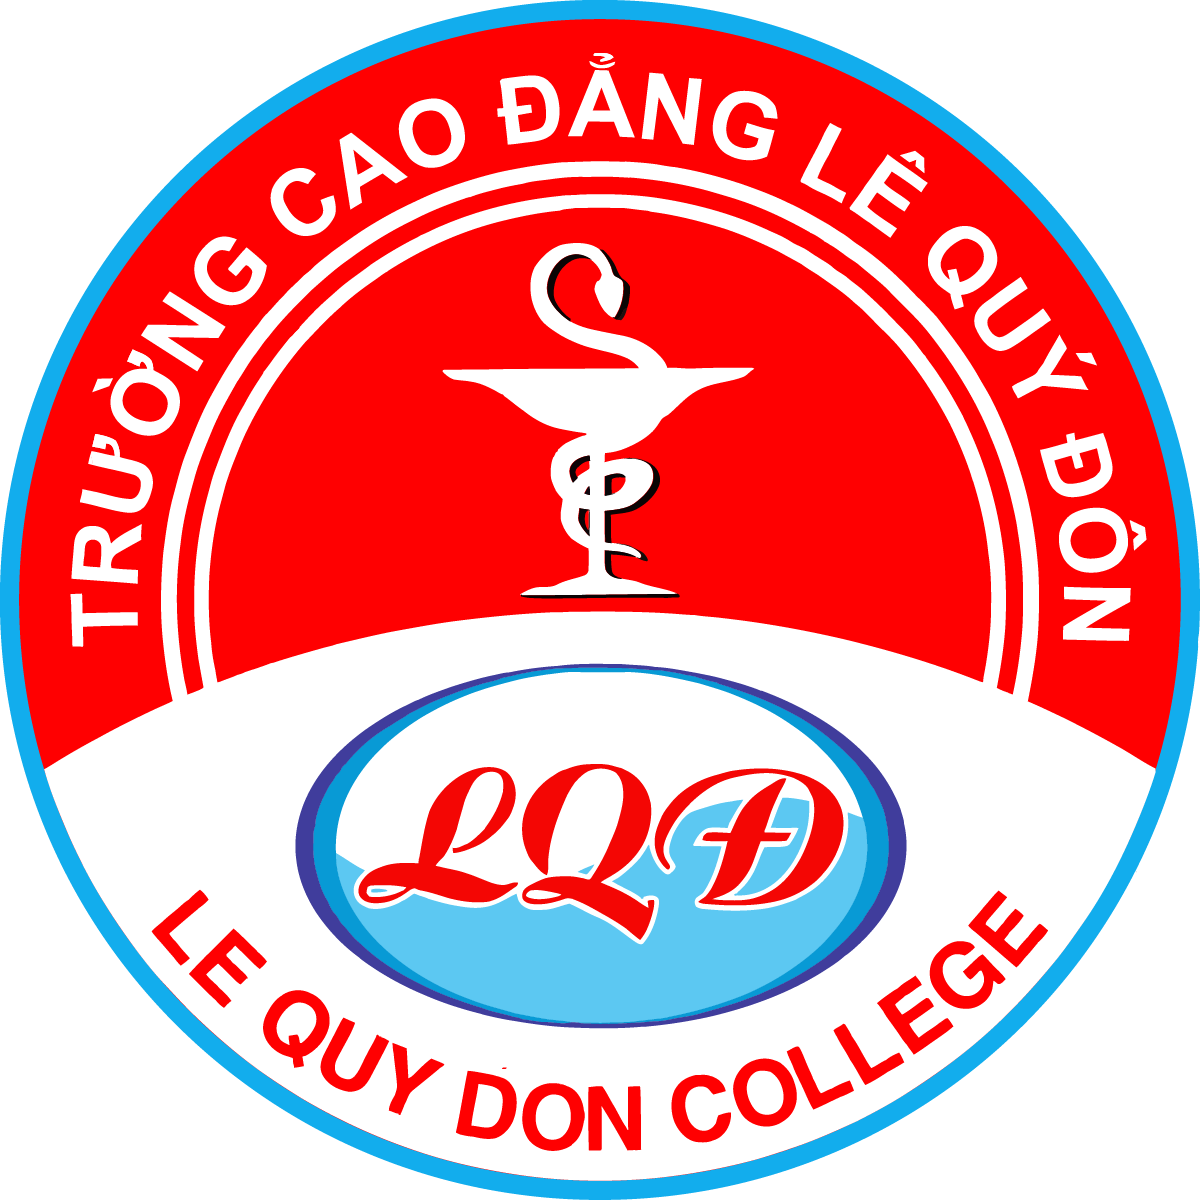 Logo Truong Cao Dang Le Quy Don 1